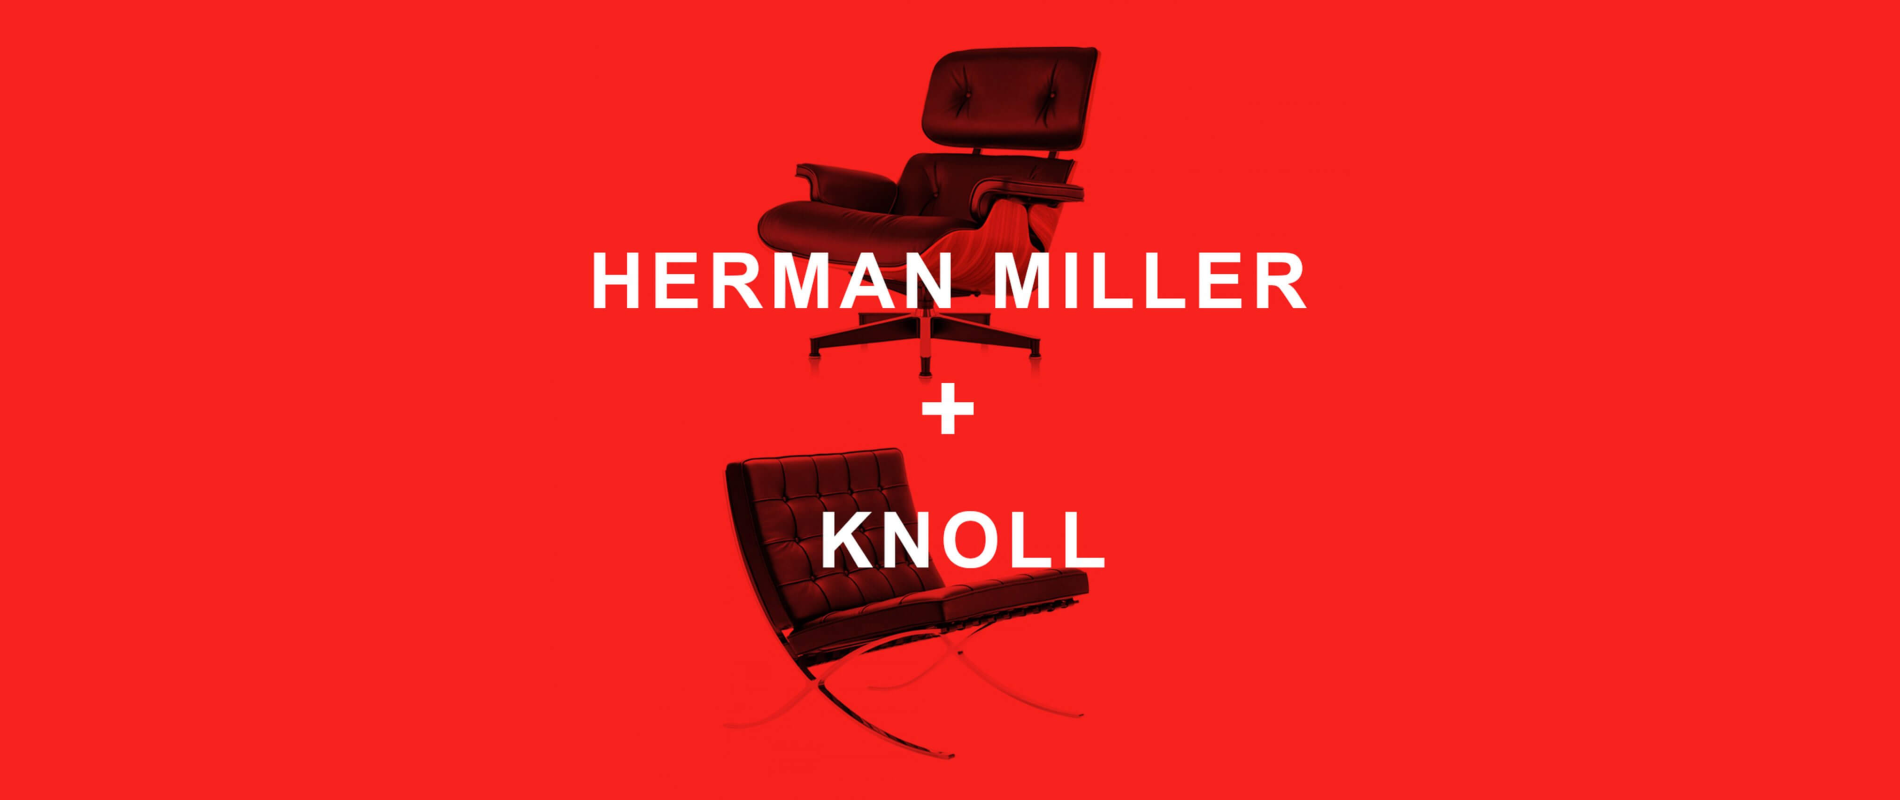 Herman Miller és Knoll egyesülése